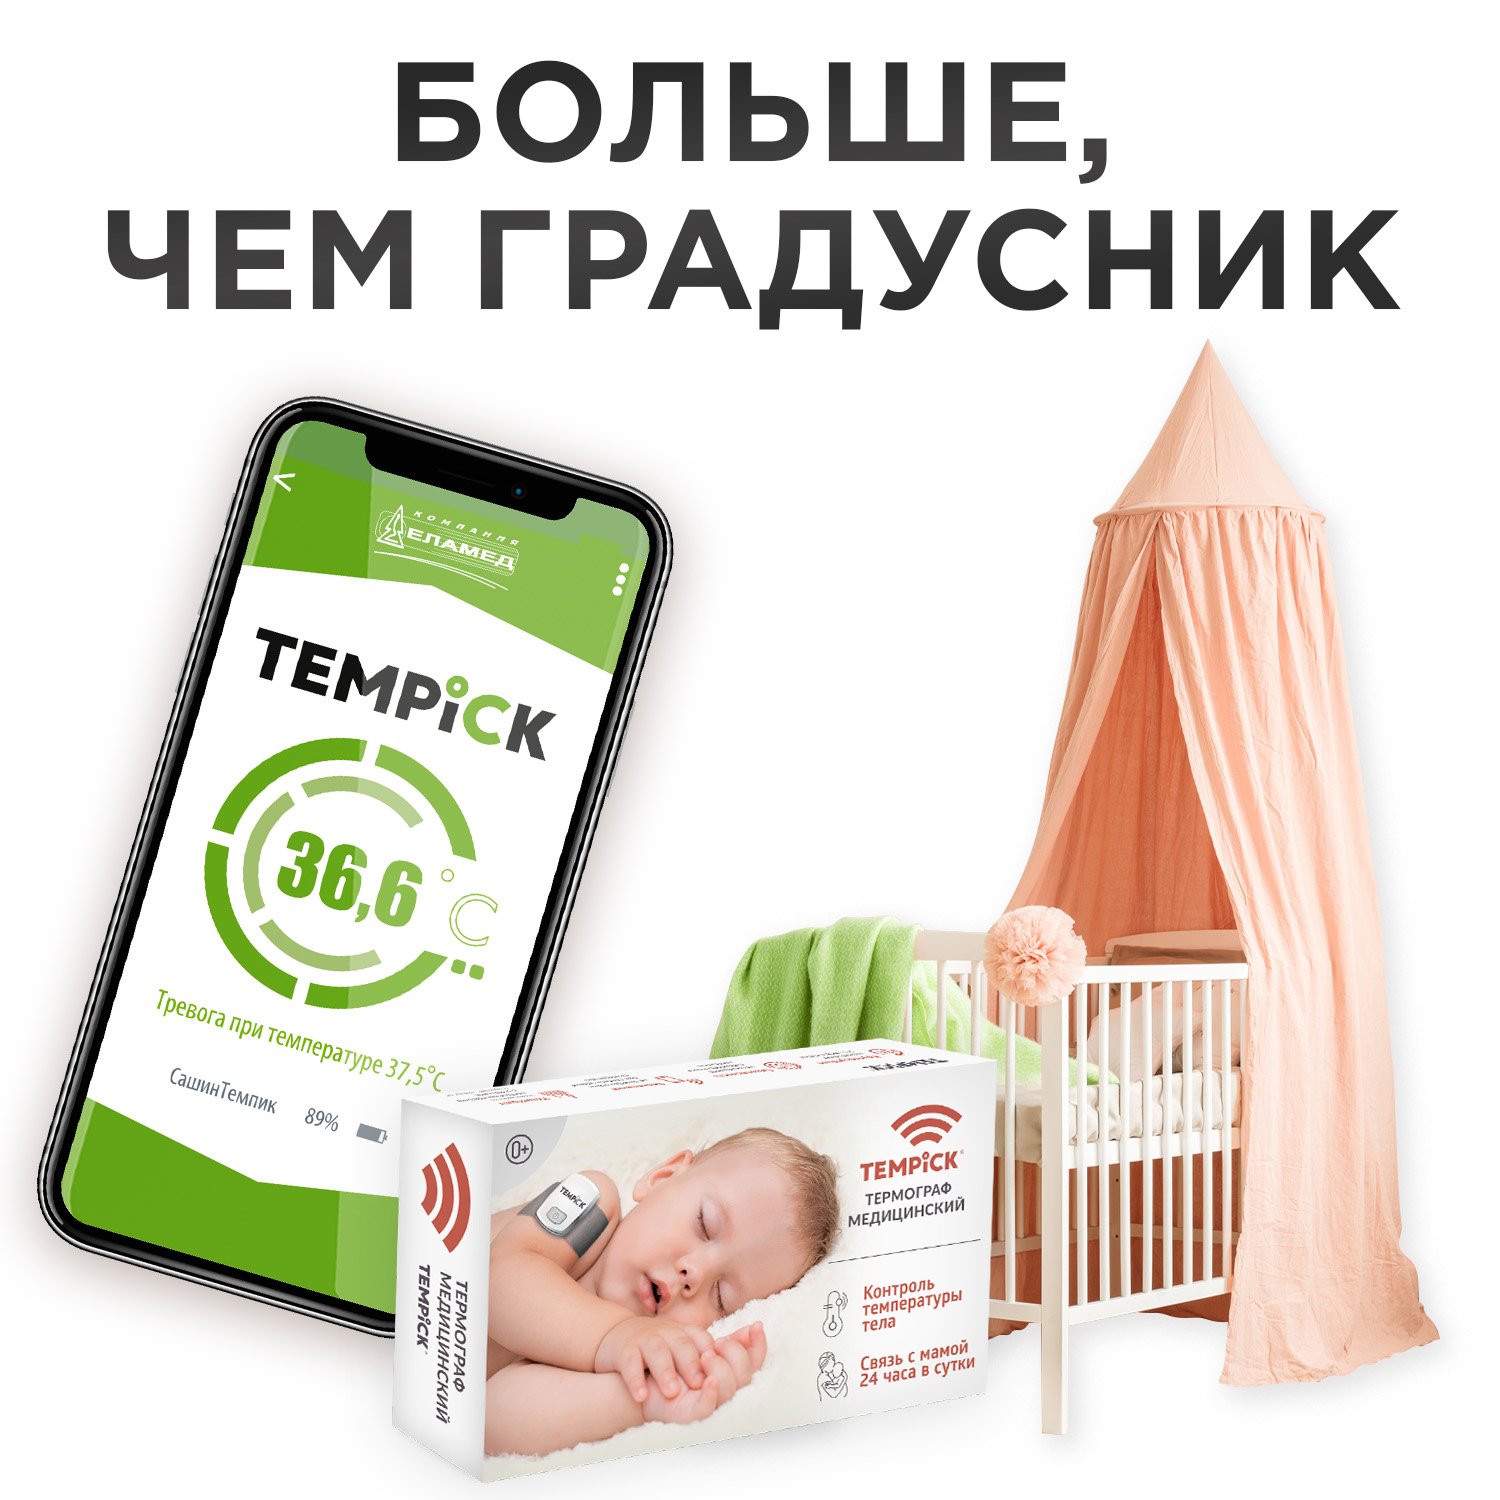 Термограф TEMPICK ЕЛАМЕД интеллектуальный для мониторинга температуры тела ребенка - фото 2